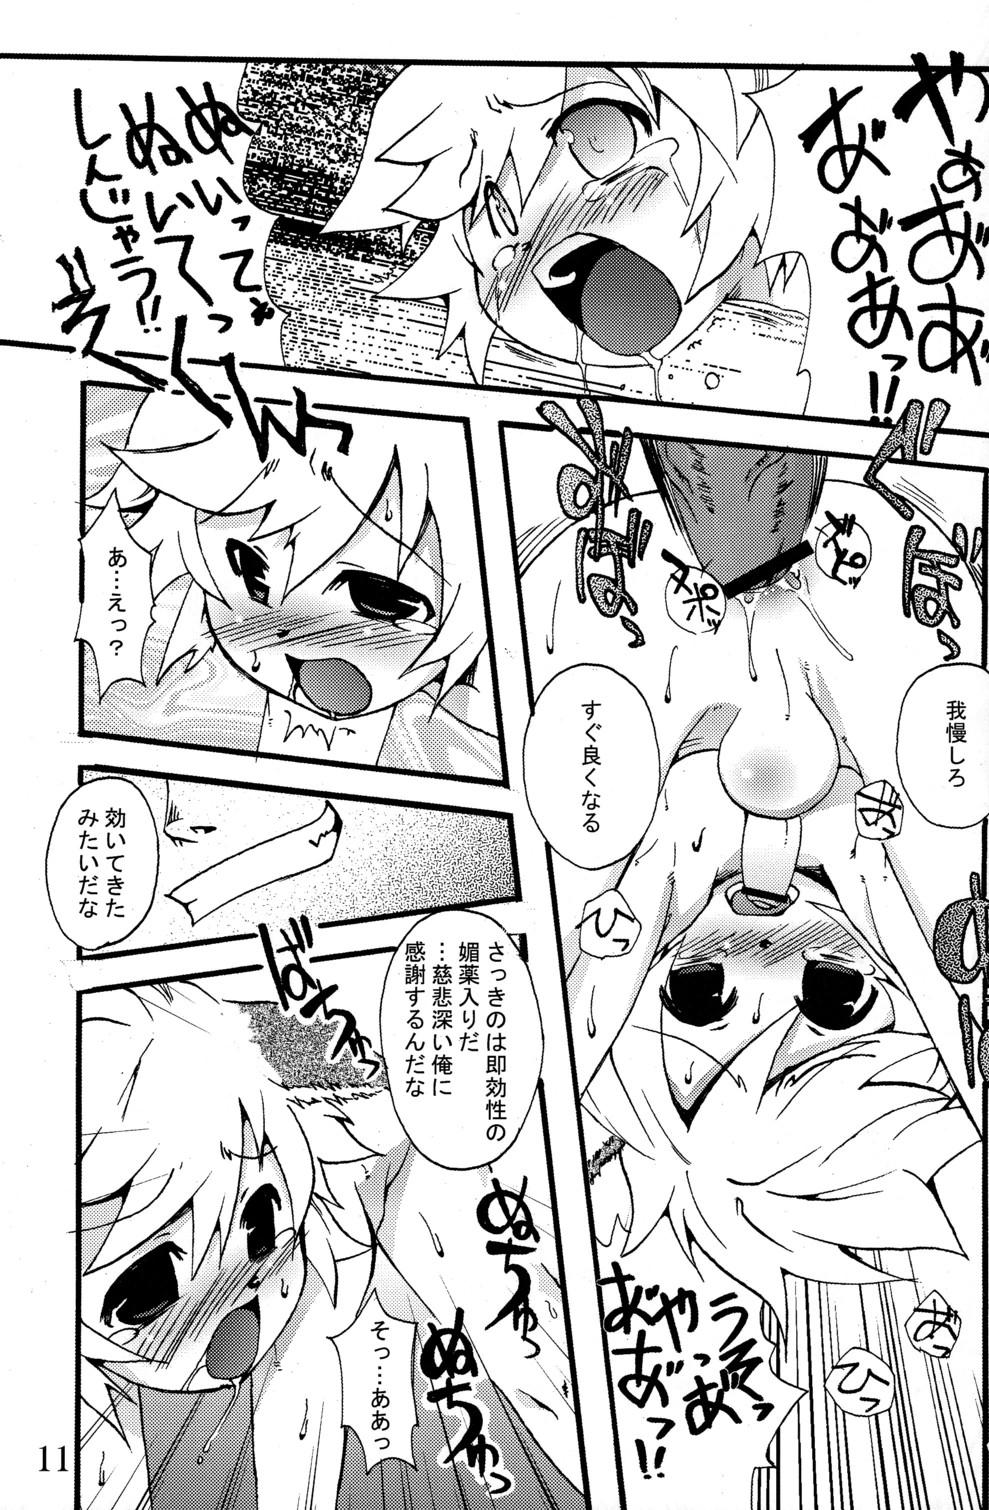 Licking Nebutte Shibutte Fau-kyun Banana!! - Shining force exa Boobies - Page 11